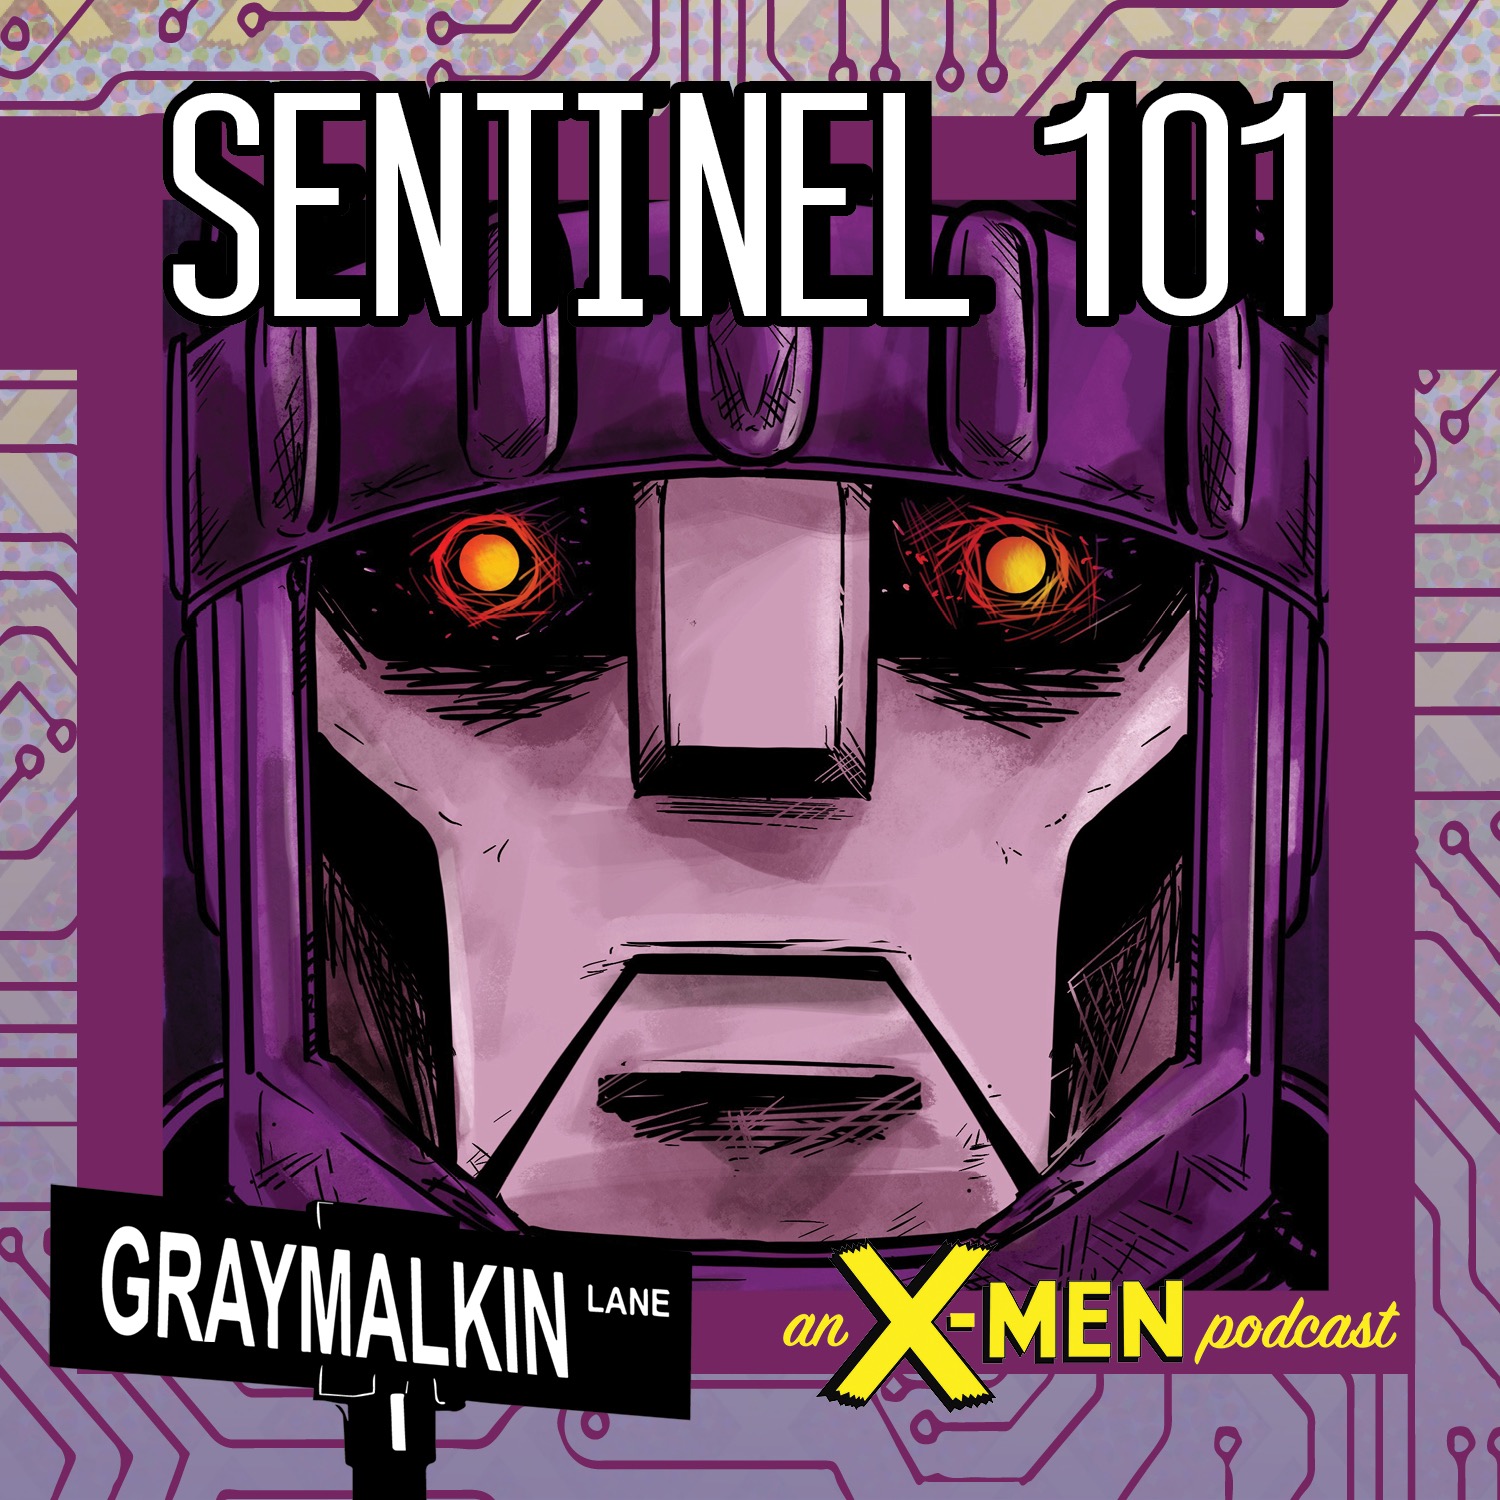 Sentinel 101! Featuring Scotty Degeest! Justin Wilder! Isabel Dieppa! Erik Bossier! Scott Free!